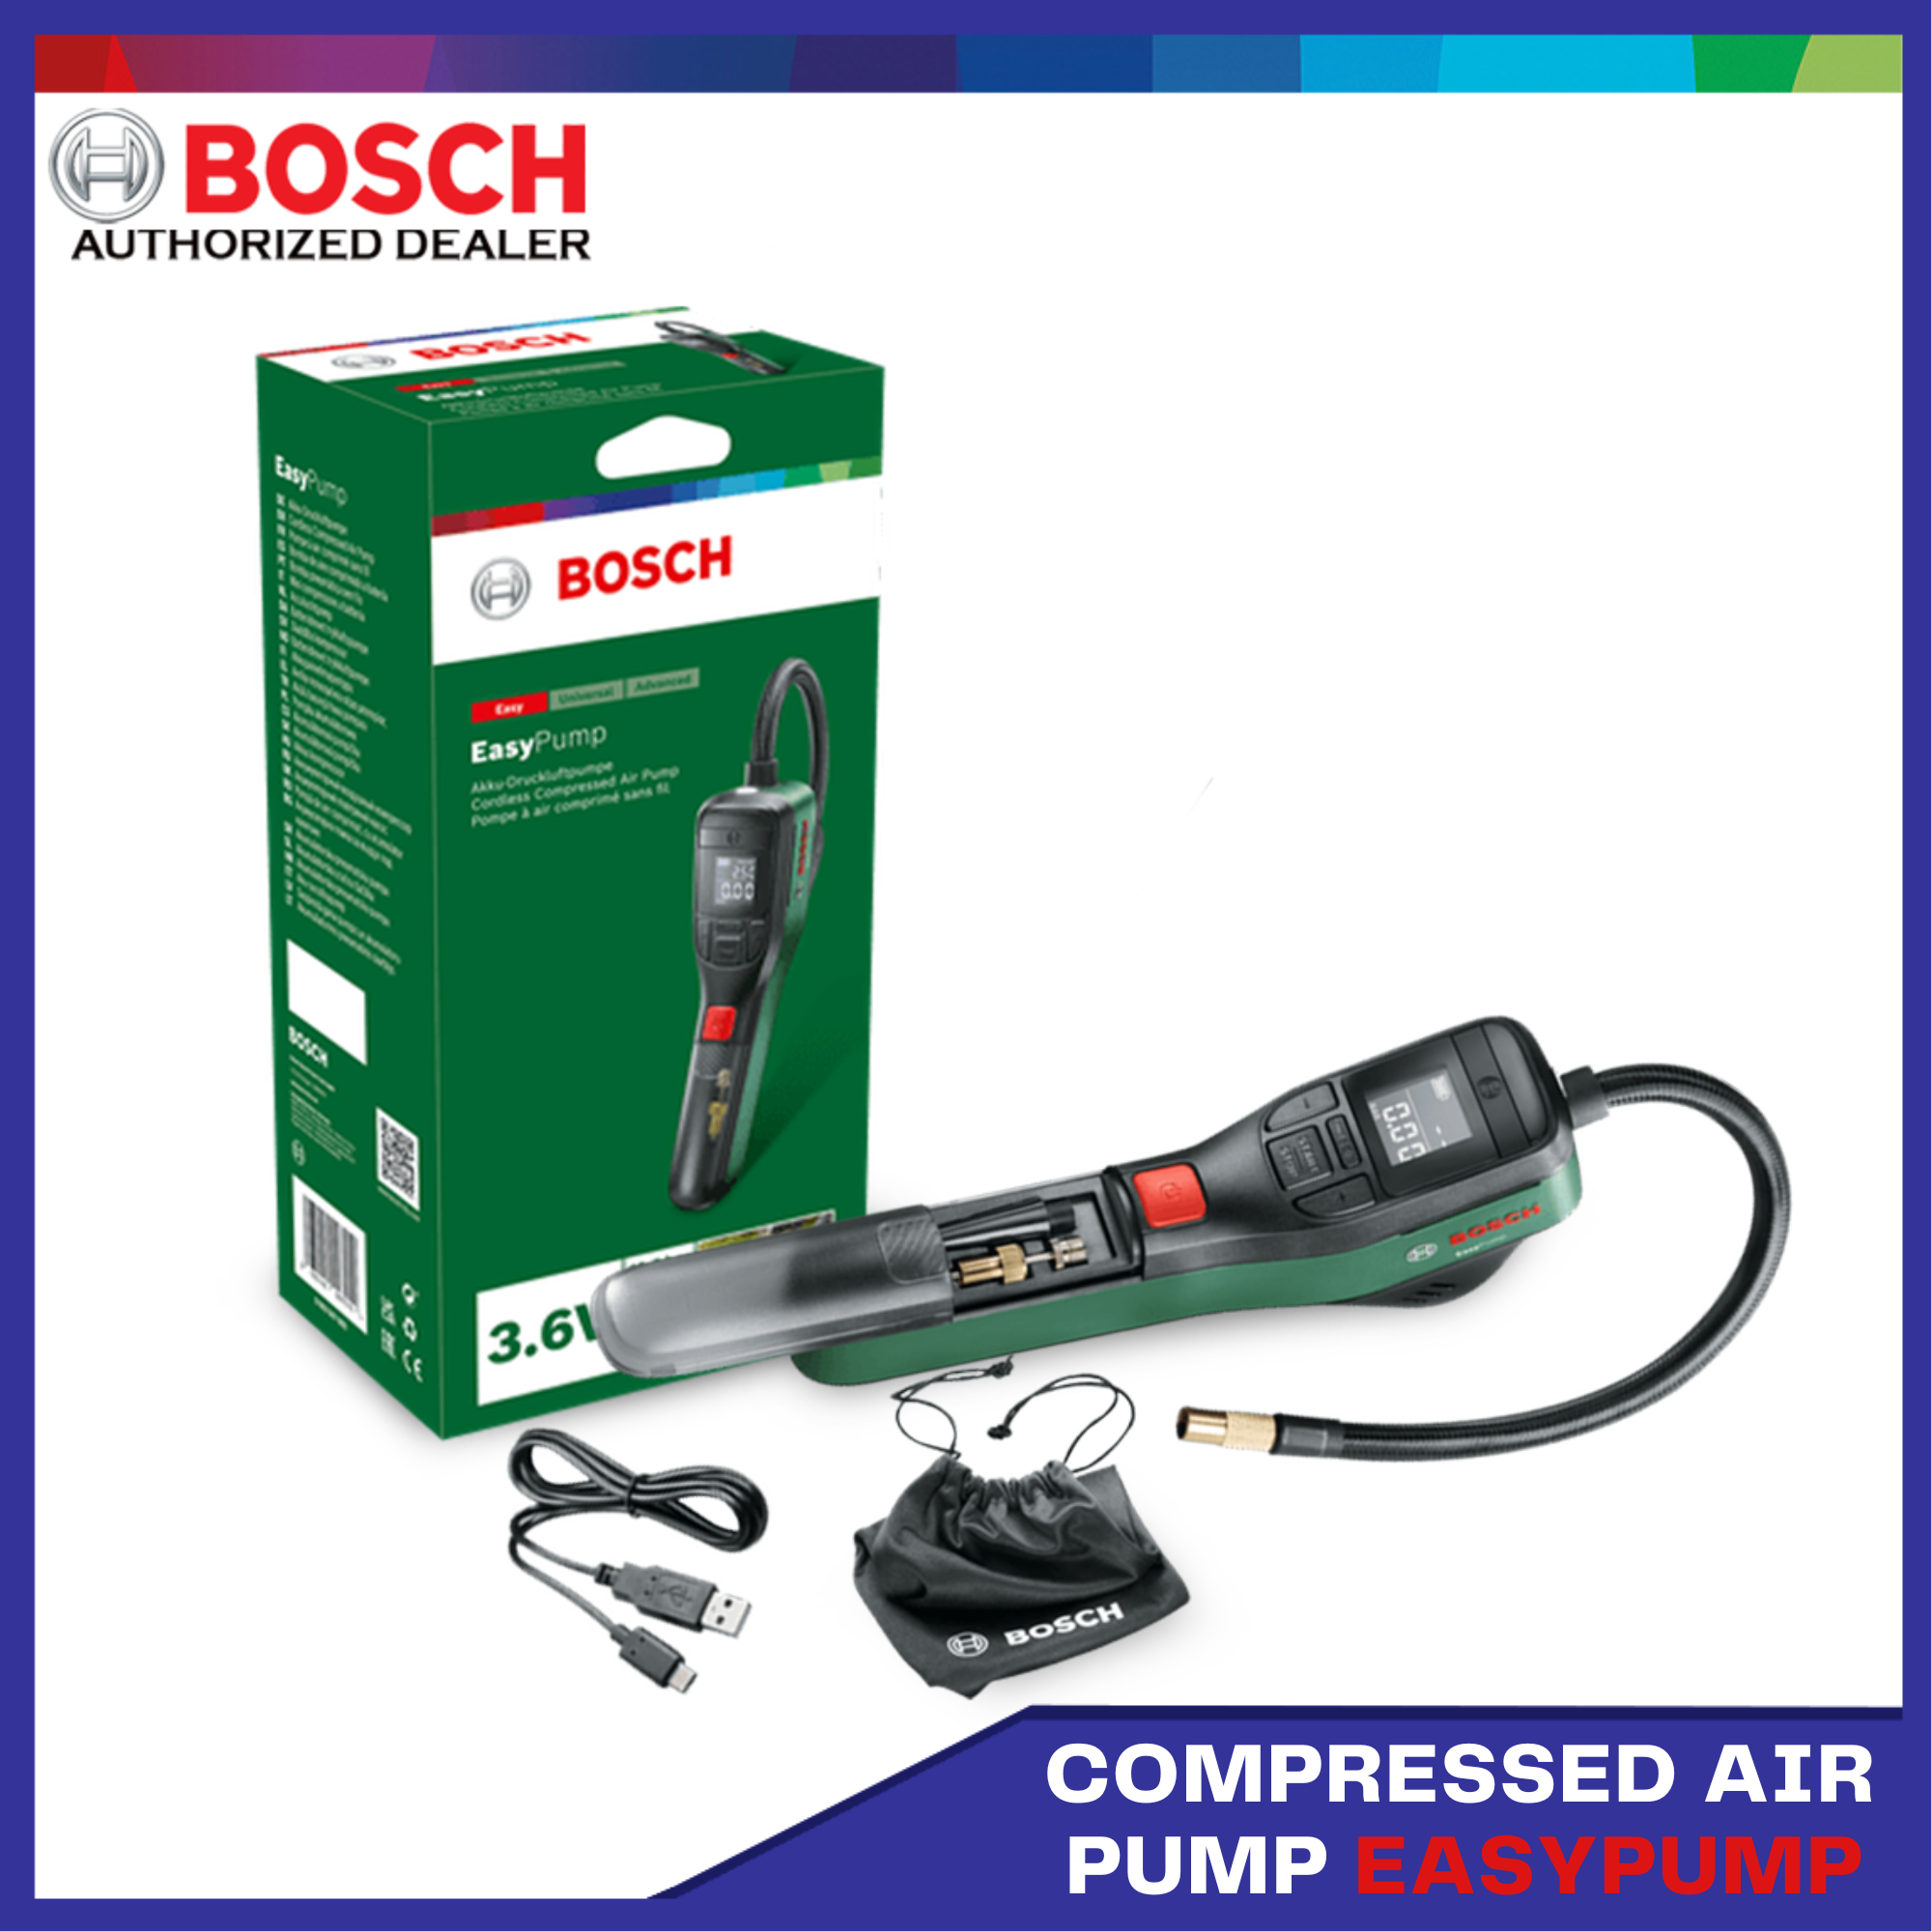 Bosch EasyPump - Cordless Pneumatic Pump